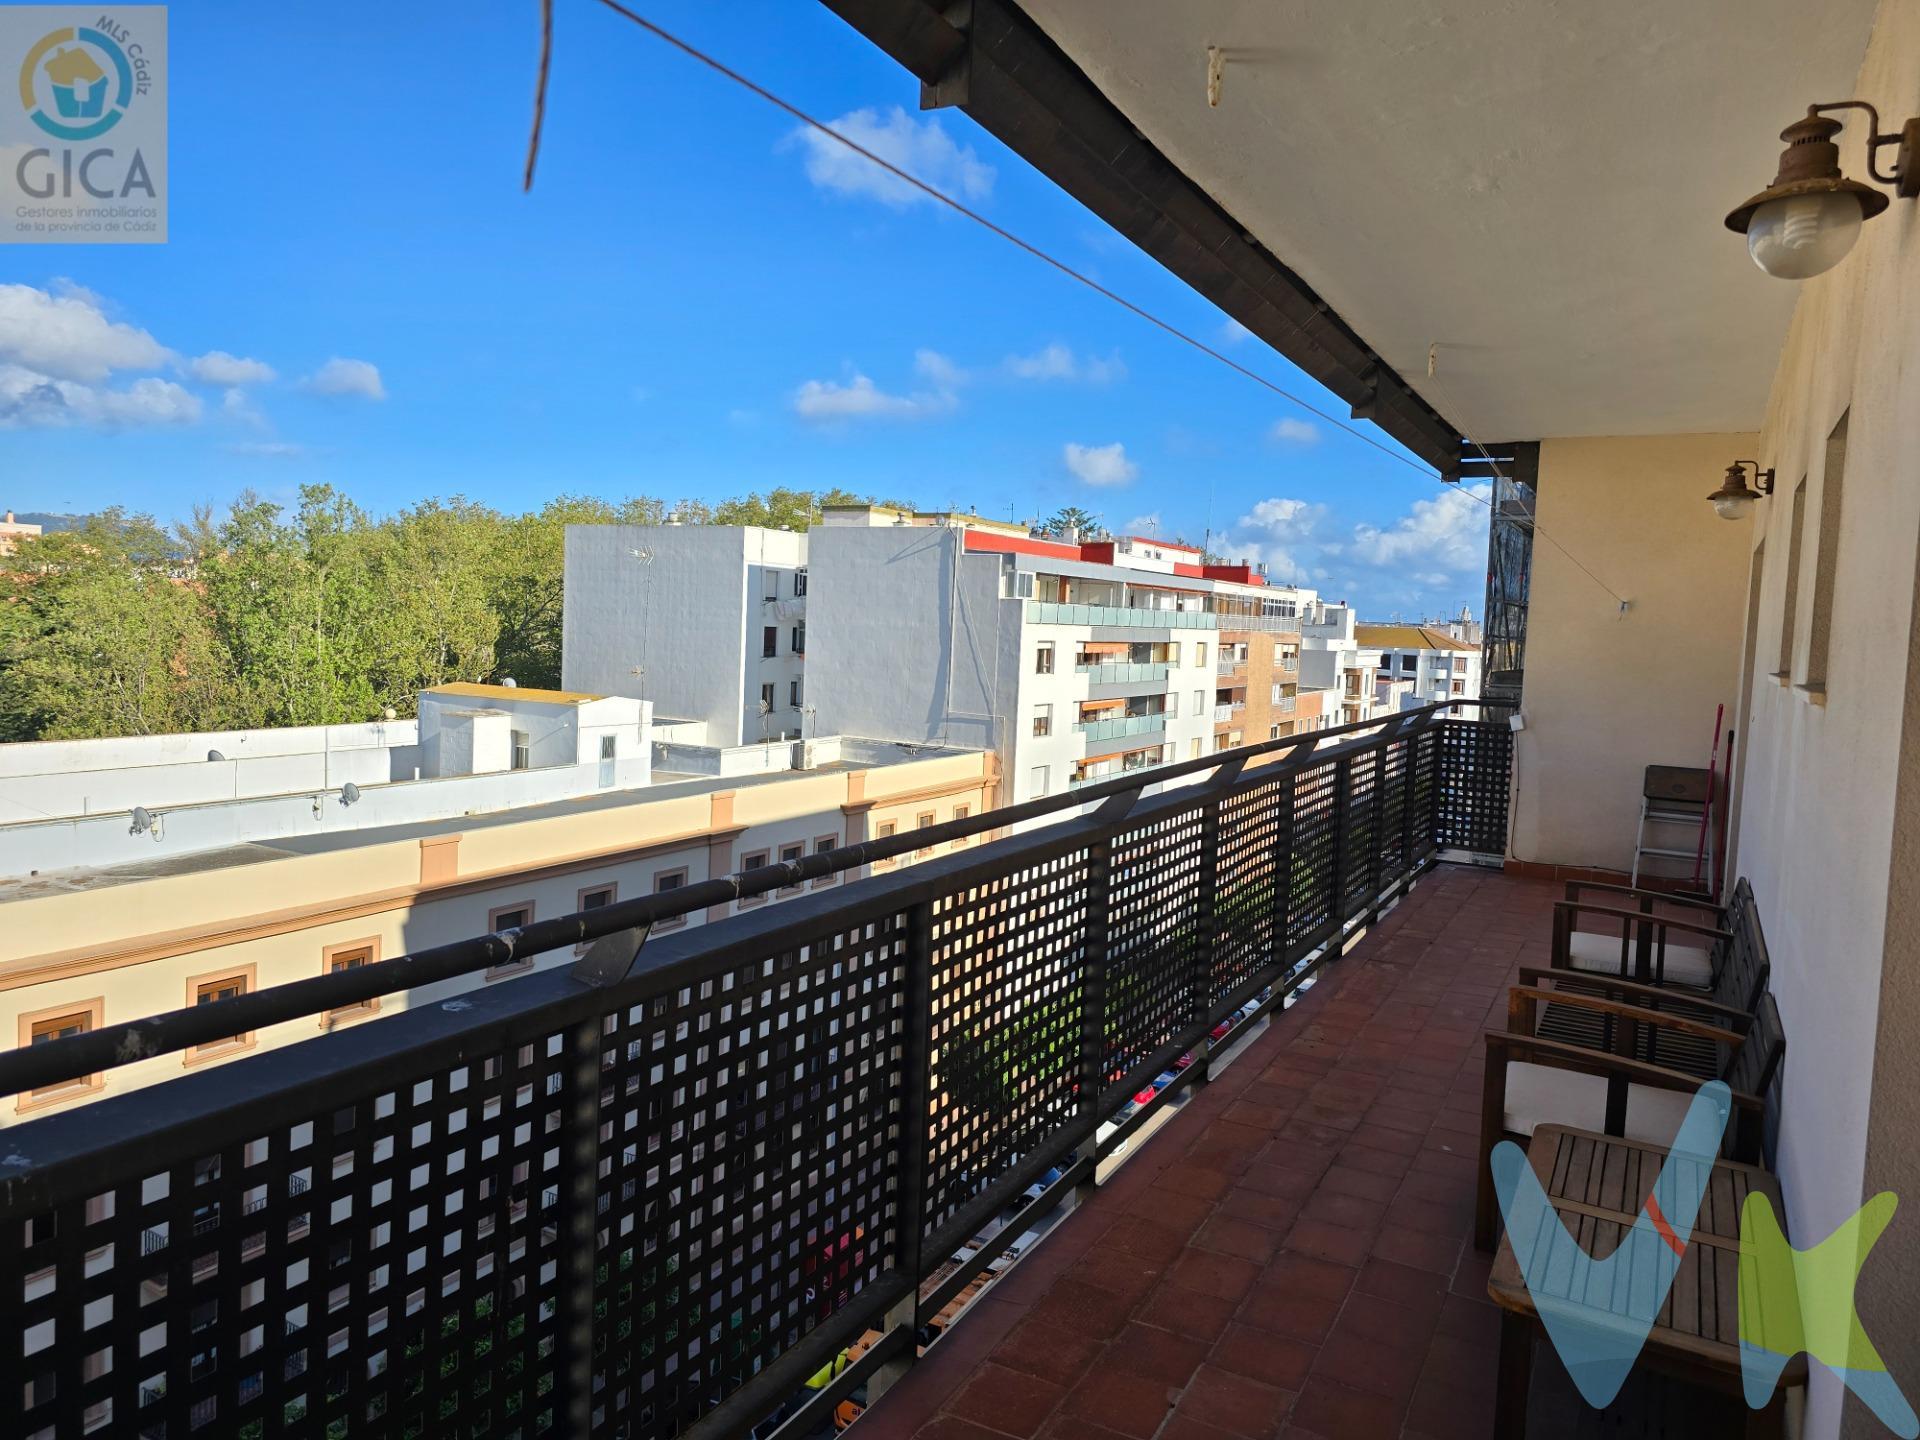 Apartamento en venta en Avda. Fuerzas Armadas. ¿Quieres vivir en el centro de Algeciras ? Te ofrecemos un magnífico apartamento en venta en la Avda Fuerzas Armadas con 1 dormitorio, cocina, salón, baño y una soleada terraza, listo para entrar a vivir y disfrutar¡¡¡. Llámanos para ir a verlo antes de que se te adelante alguien¡¡¡. --------------------------------------------------. Informamos a nuestros clientes que los gastos de notaría, registro, gestoría, impuestos y los honorarios de la agencia  NO están incluidos en el precio. A su vez, disponemos del documento informativo abreviado de la propiedad (según decreto 218/2005, del 11 de octubre) y de seguro de caución, para la protección del dinero entregado como señal para la reserva de una vivienda. Por mandato expreso del propietario, comercializamos este inmueble en exclusiva, lo que le garantiza el acceso a toda la información, a un servicio de calidad, un trato fácil, sencillo y sin interferencias de terceros. Por este motivo, se ruega no molestar al propietario, a los ocupantes de la propiedad o a los vecinos. Muchas gracias por su comprensión.